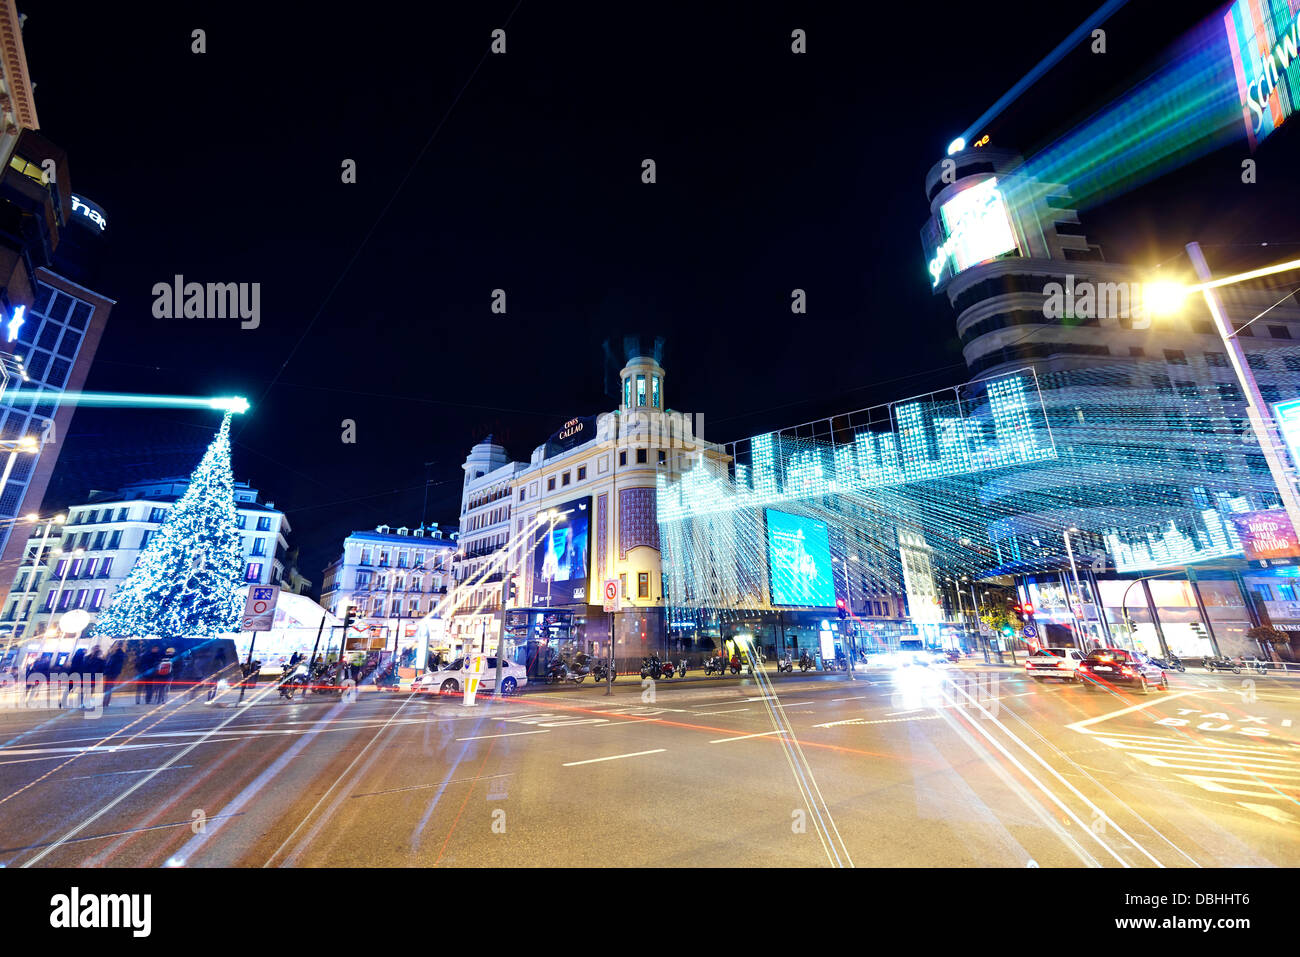 Le trafic à Callao Square avec string lights au moment de Noël. Madrid. L'Espagne. Banque D'Images